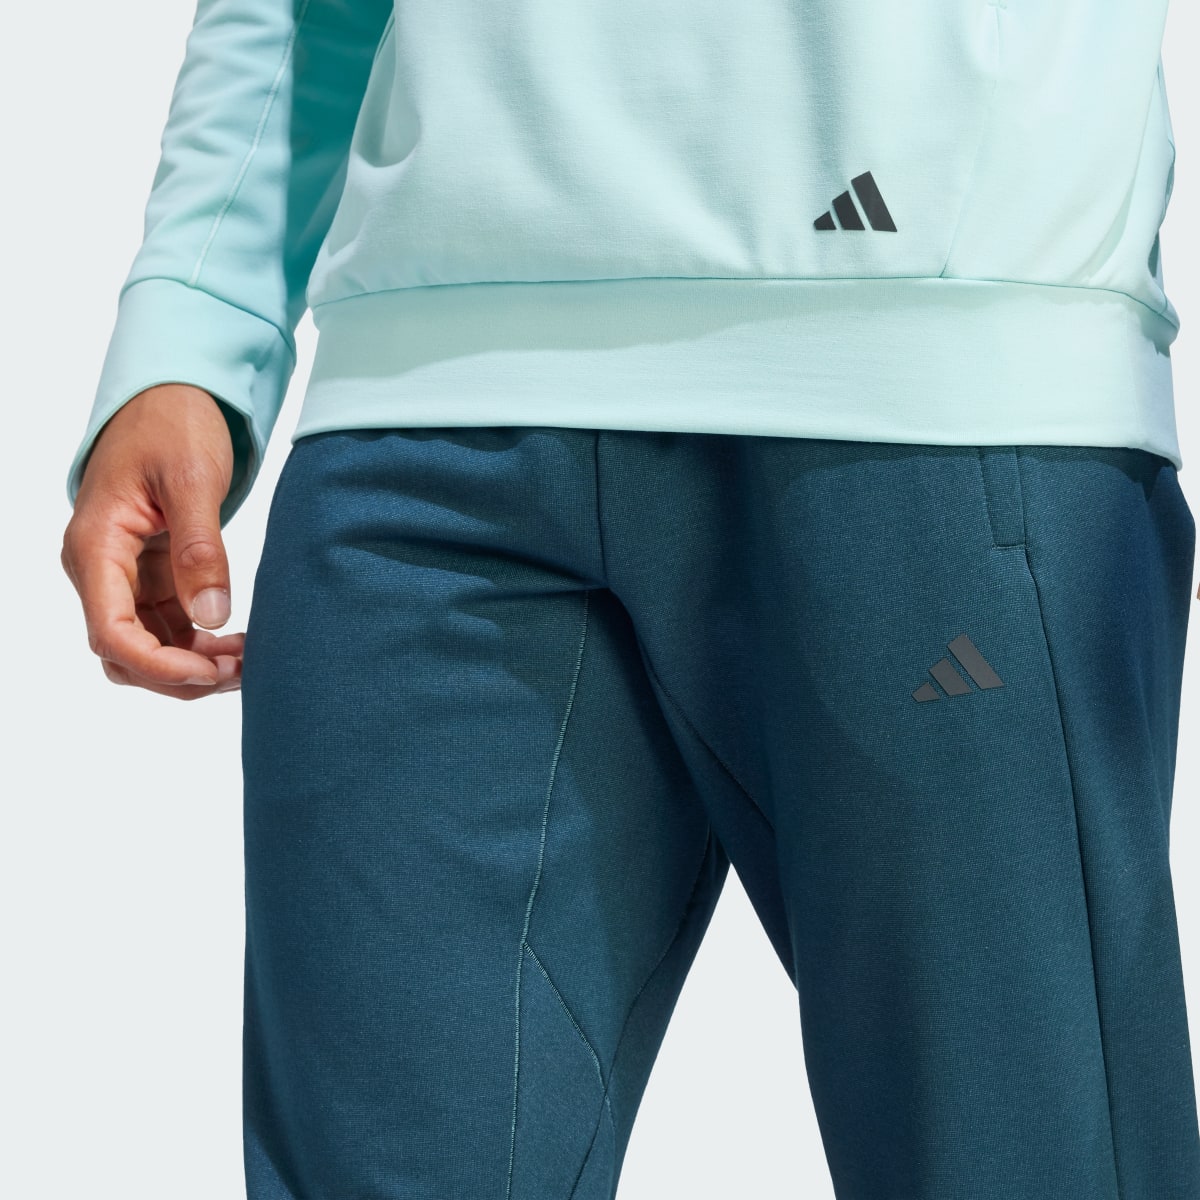 Adidas Designed for Training Yoga Training 7/8 Pants. 5